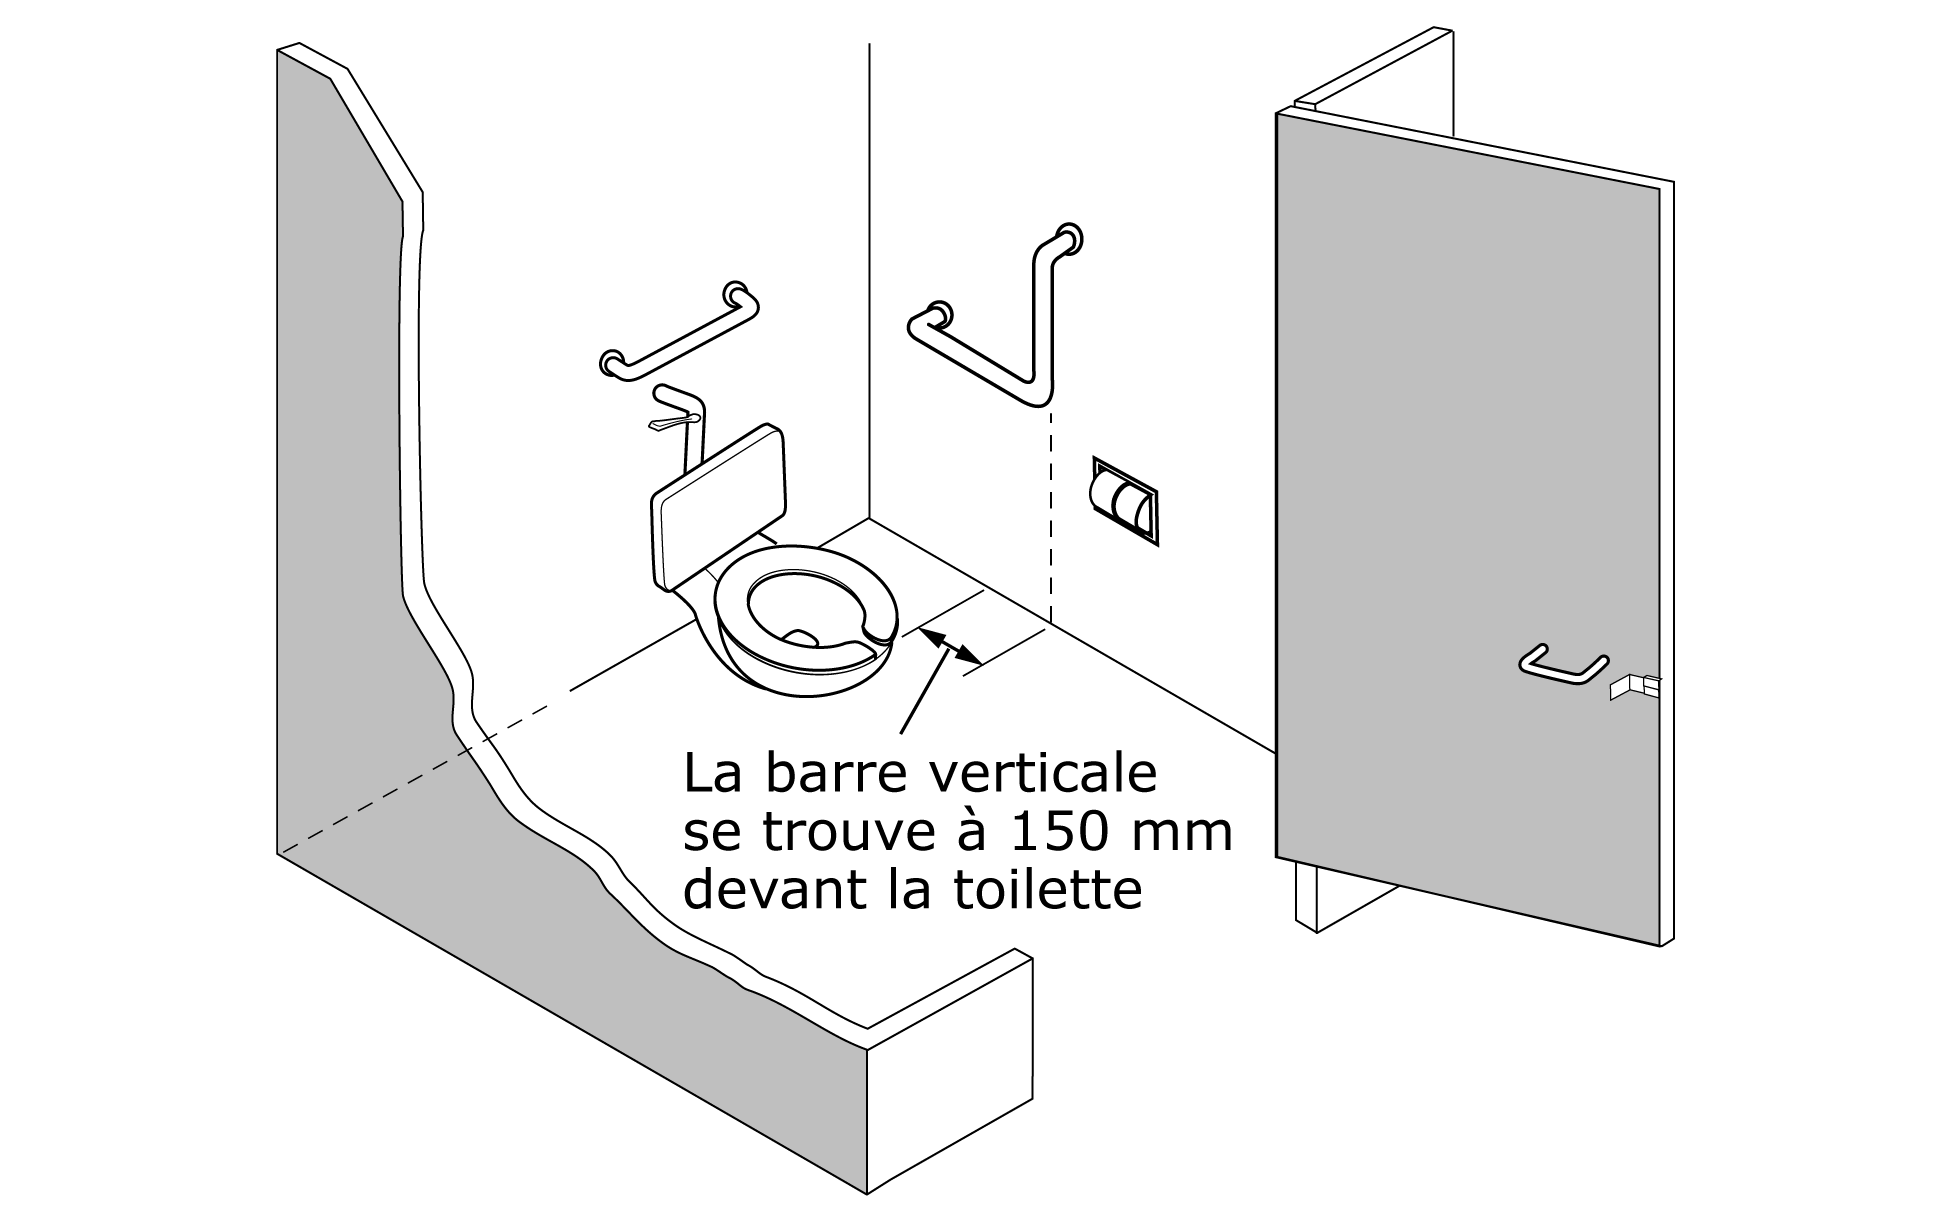 Cette figure montre une vue de trois quarts, partiellement vue d’en haut, d’une cabine de toilette, avec la toilette et les barres d’appui arrière et latérale bien visibles. La distance entre le bord avant de la toilette et la barre d’appui latérale est de 150 mm. 